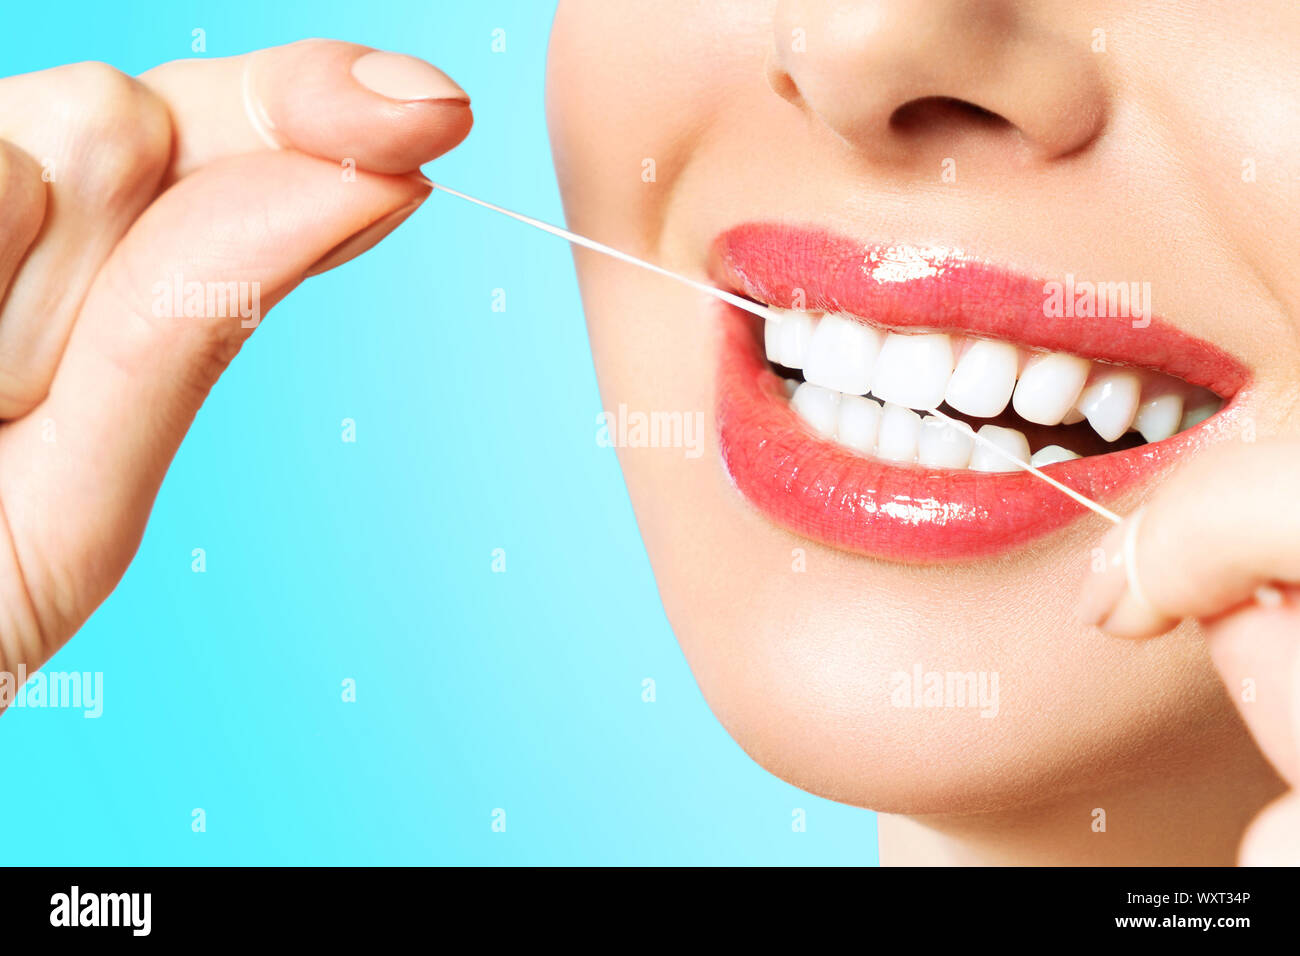 Junge schöne Frau ist bei der Reinigung der Zähne beschäftigt. Schönes Lächeln Gesunde weisse Zähne. Ein Mädchen hält einen Zahnseide. Das Konzept der Mundhygiene. Stockfoto